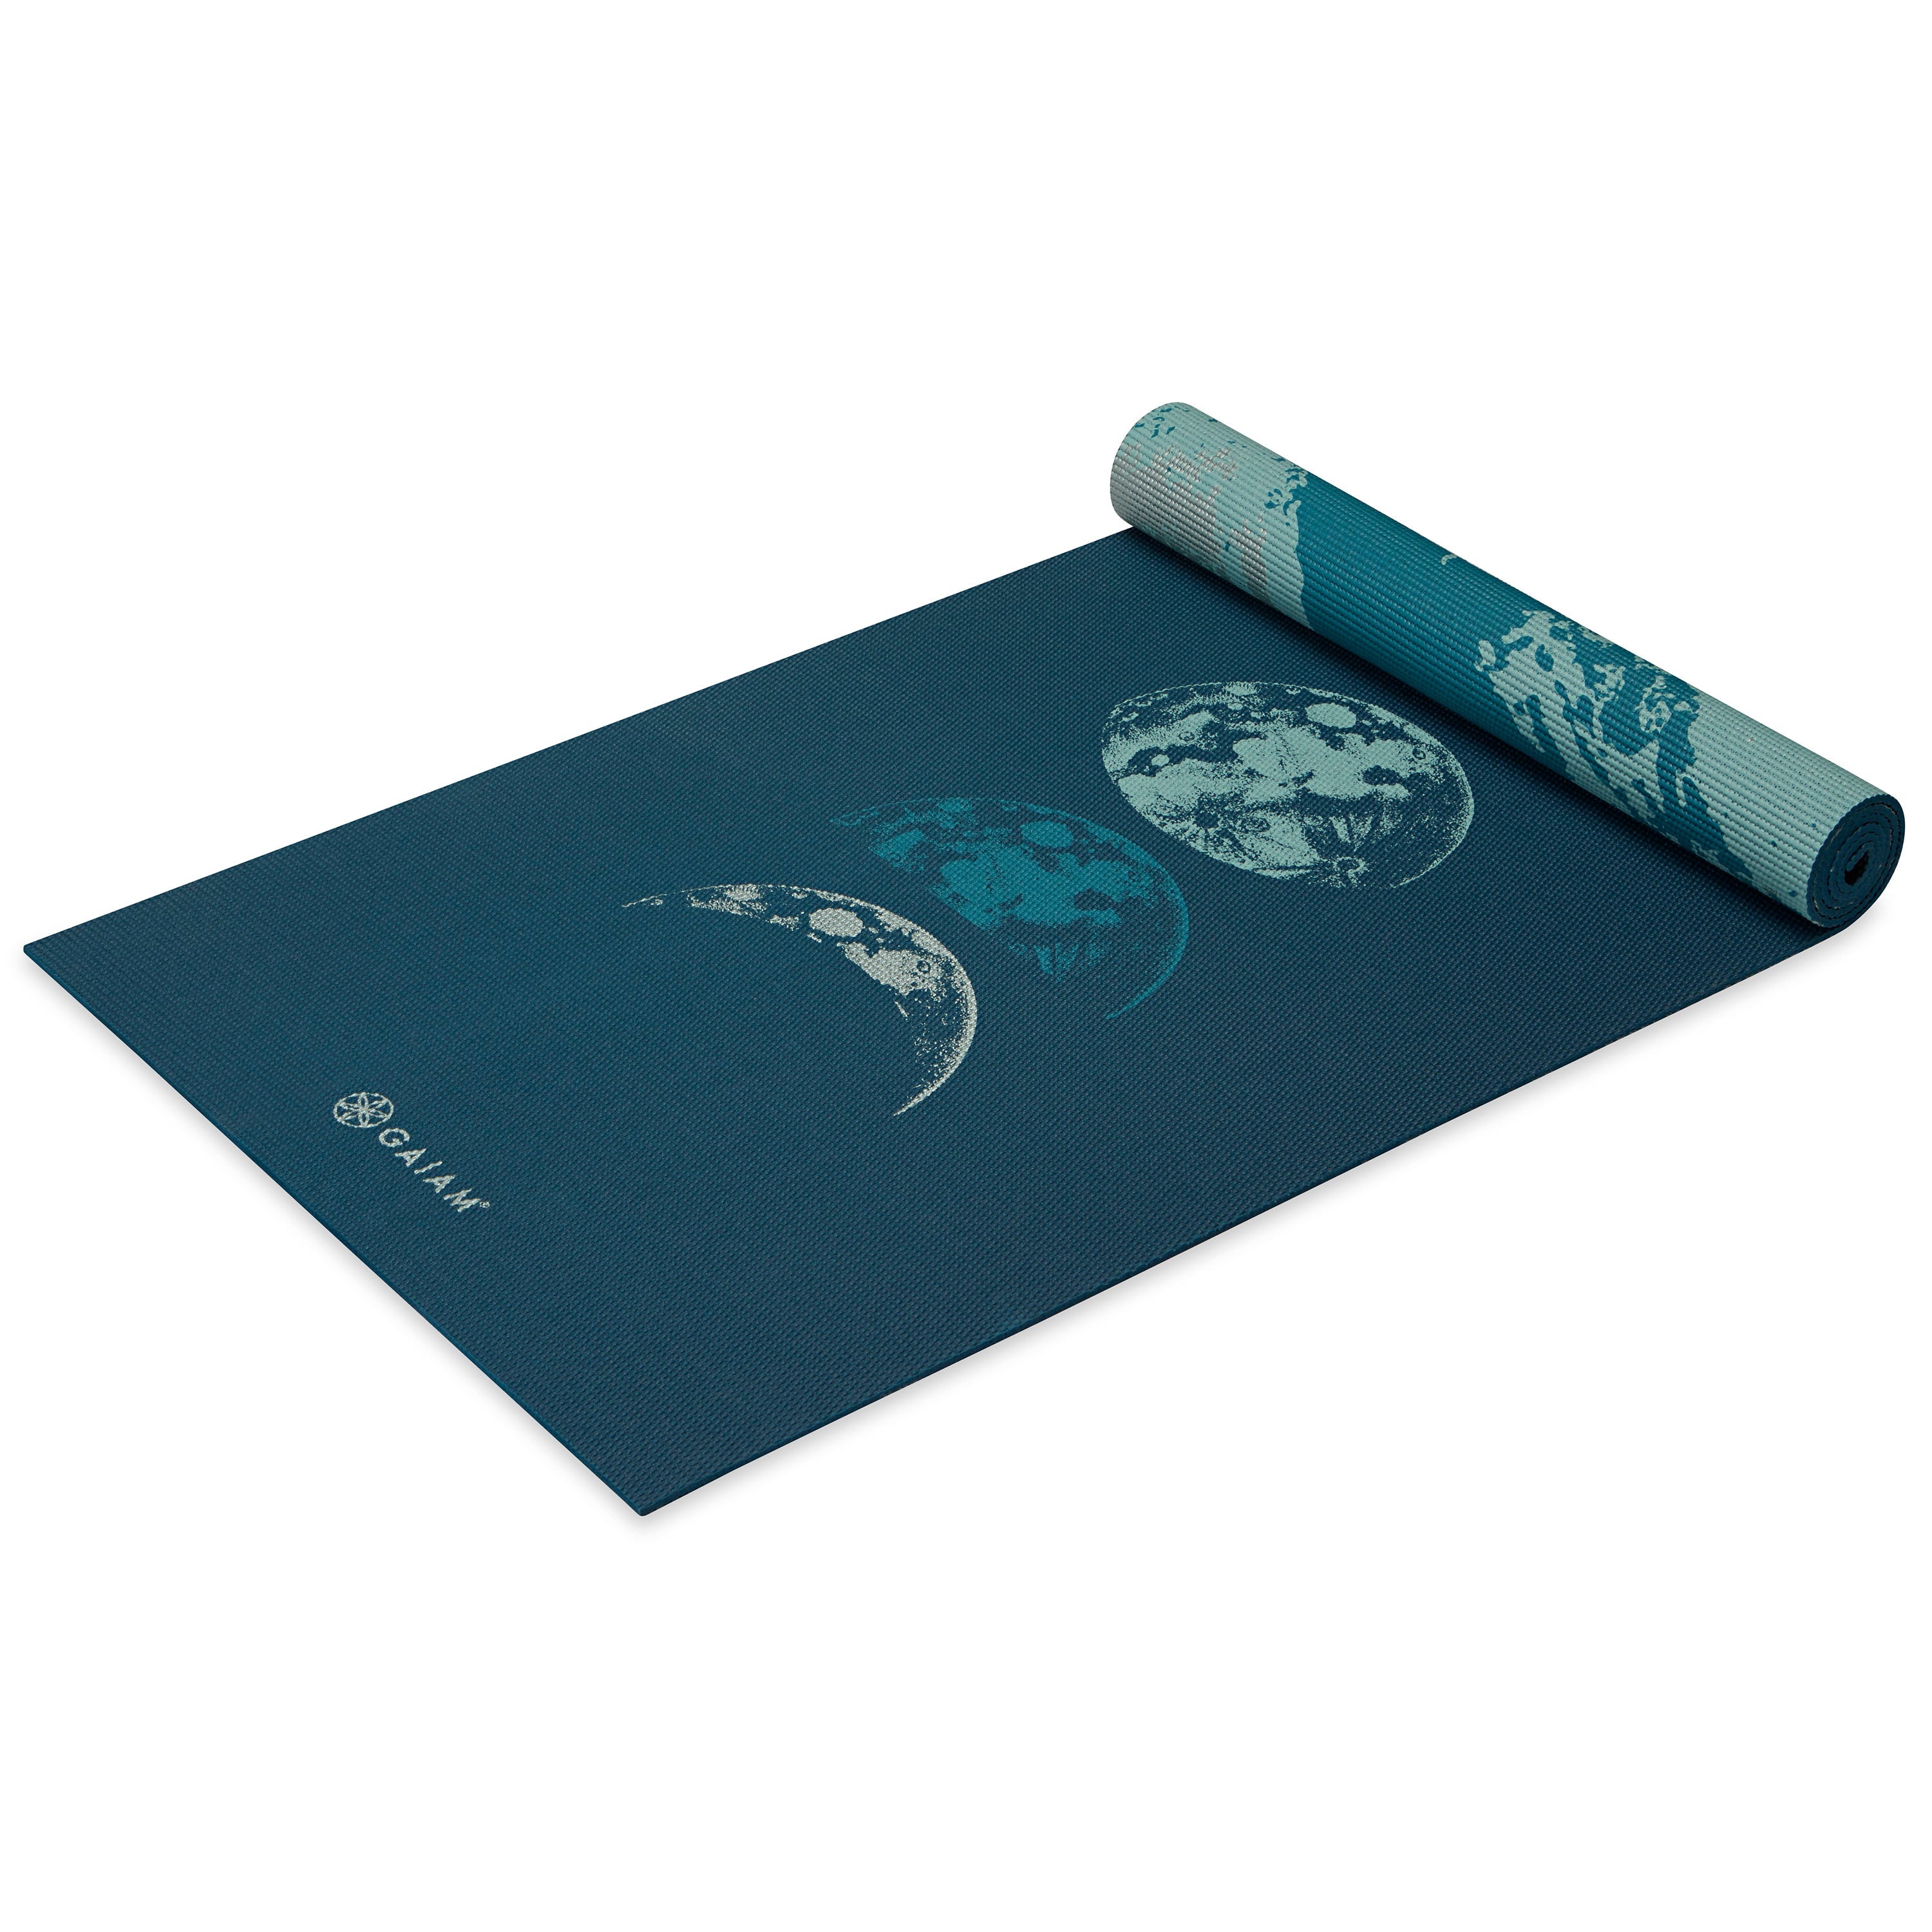 Gaiam Yoga Mat - Premium 6Mm Print Reversible Extra Thick Non Slip